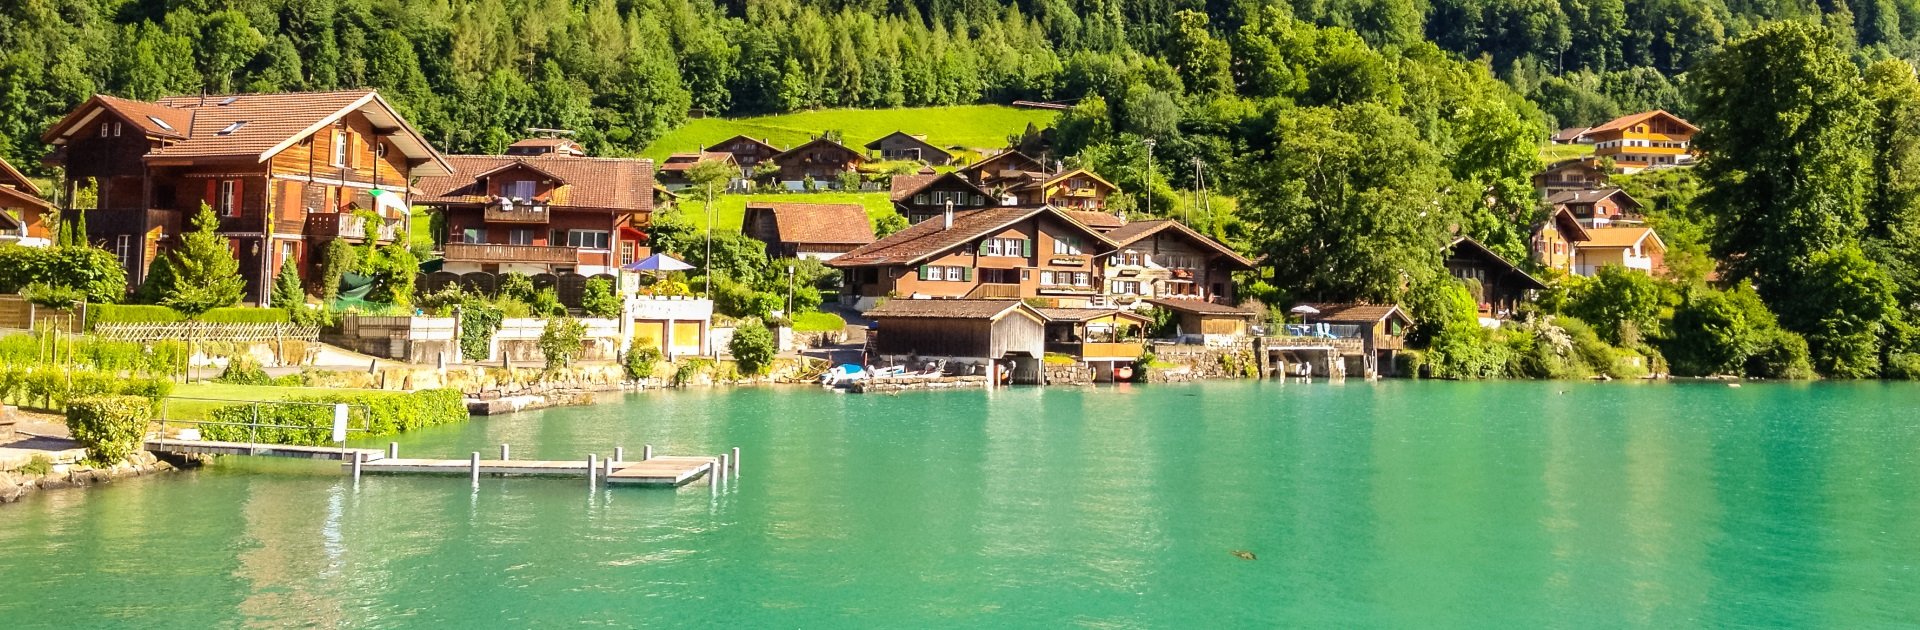 Ferienunterkünfte in der Schweiz